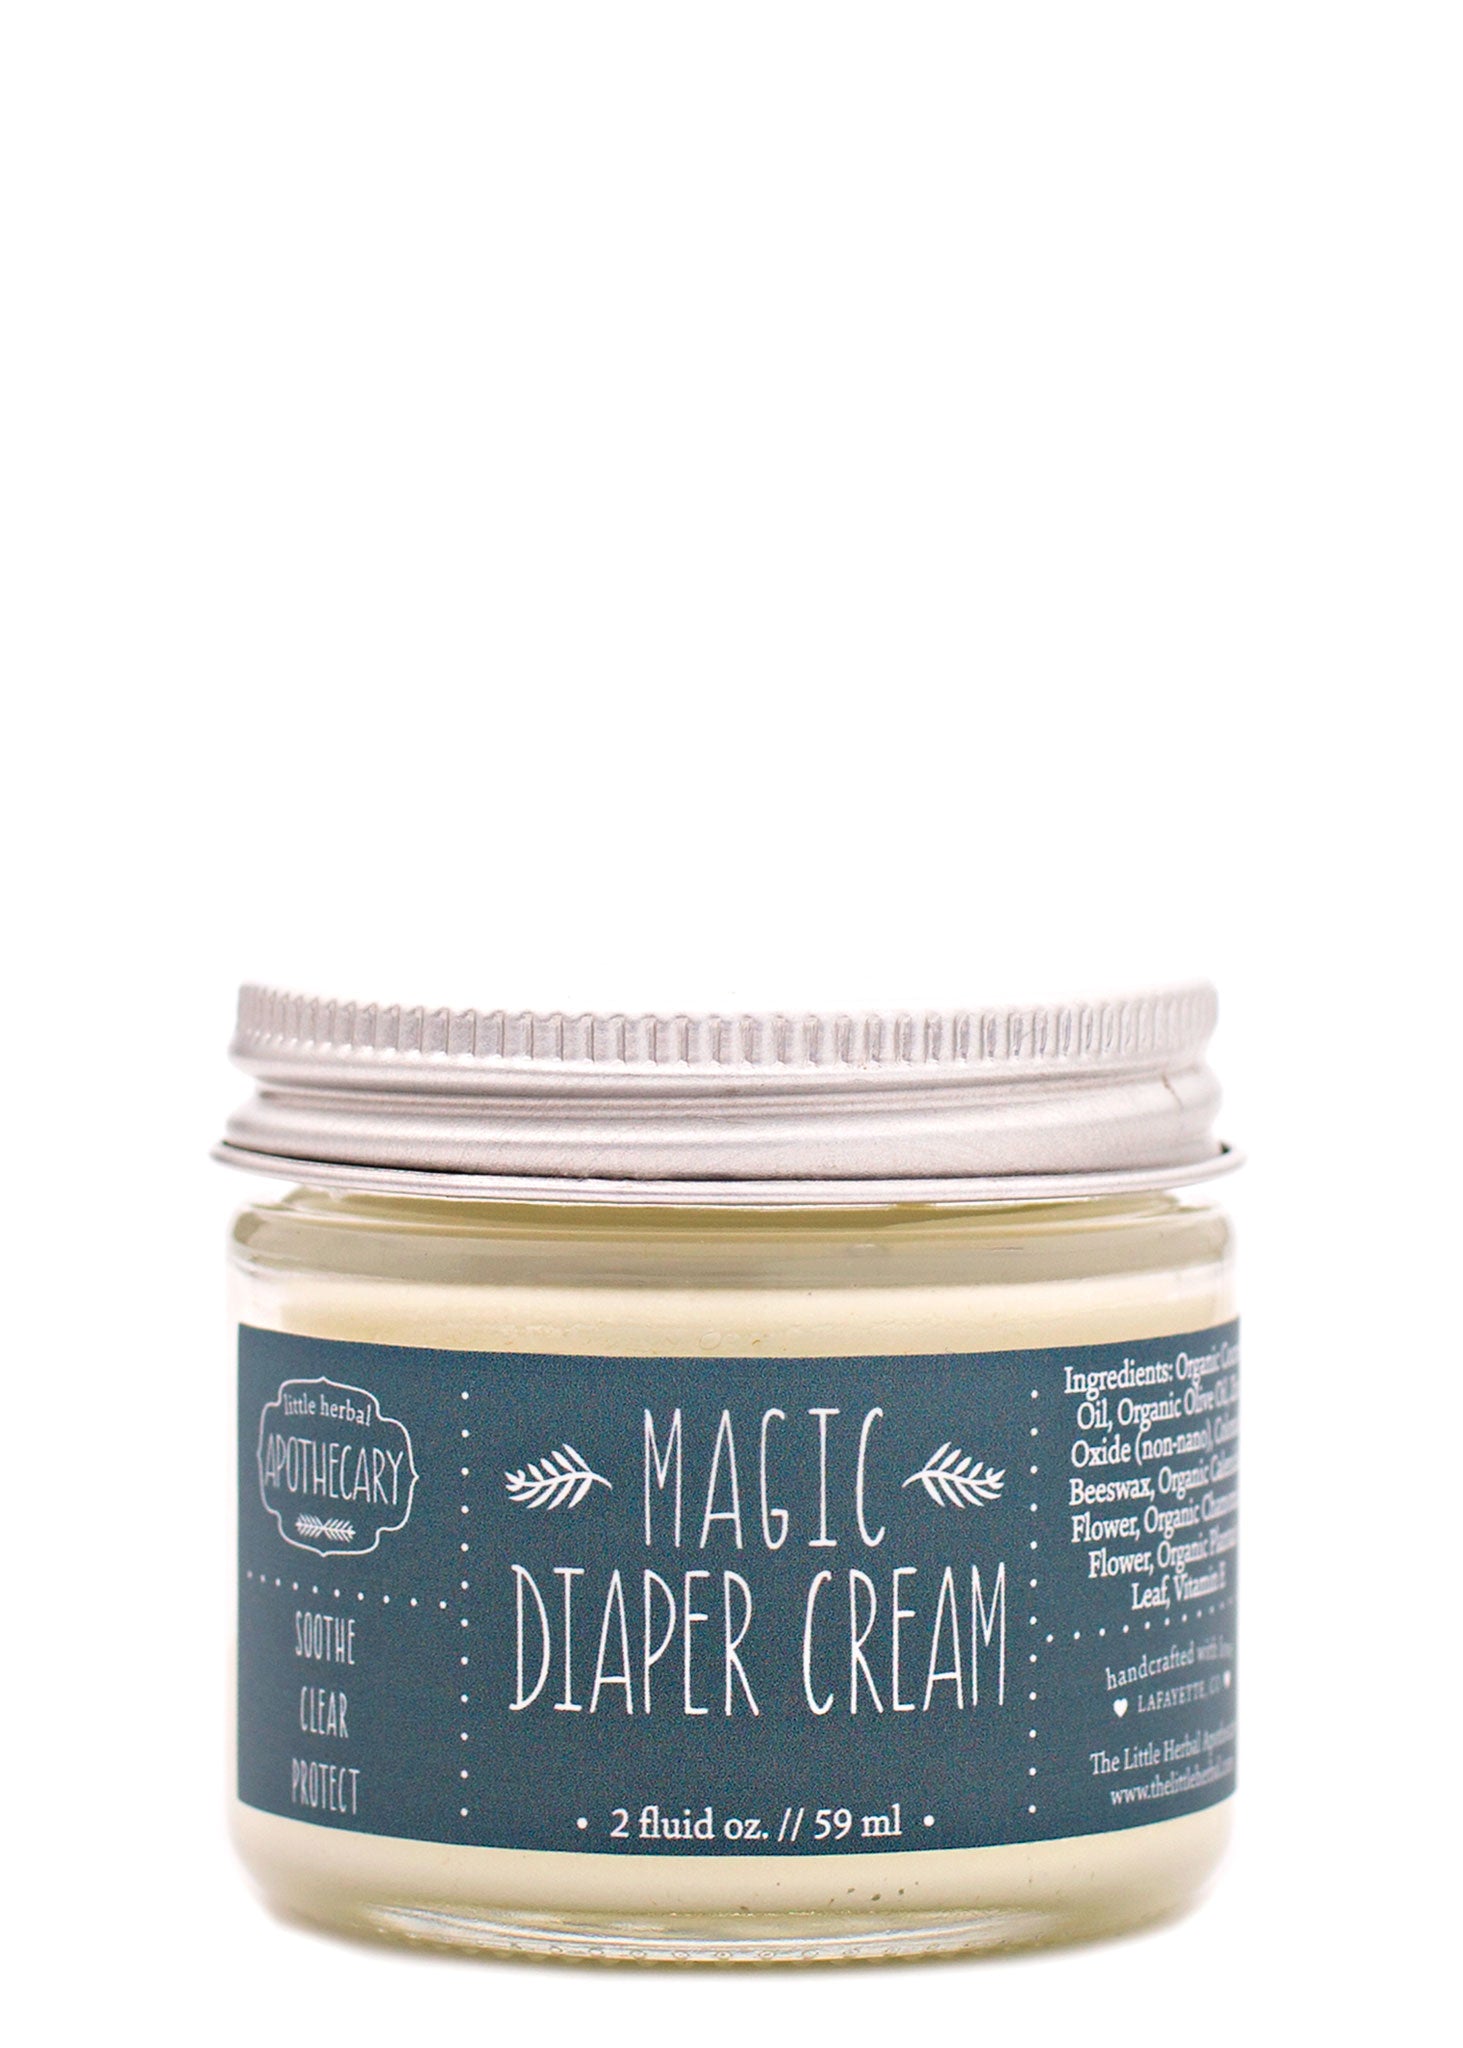 Magic Diaper Cream